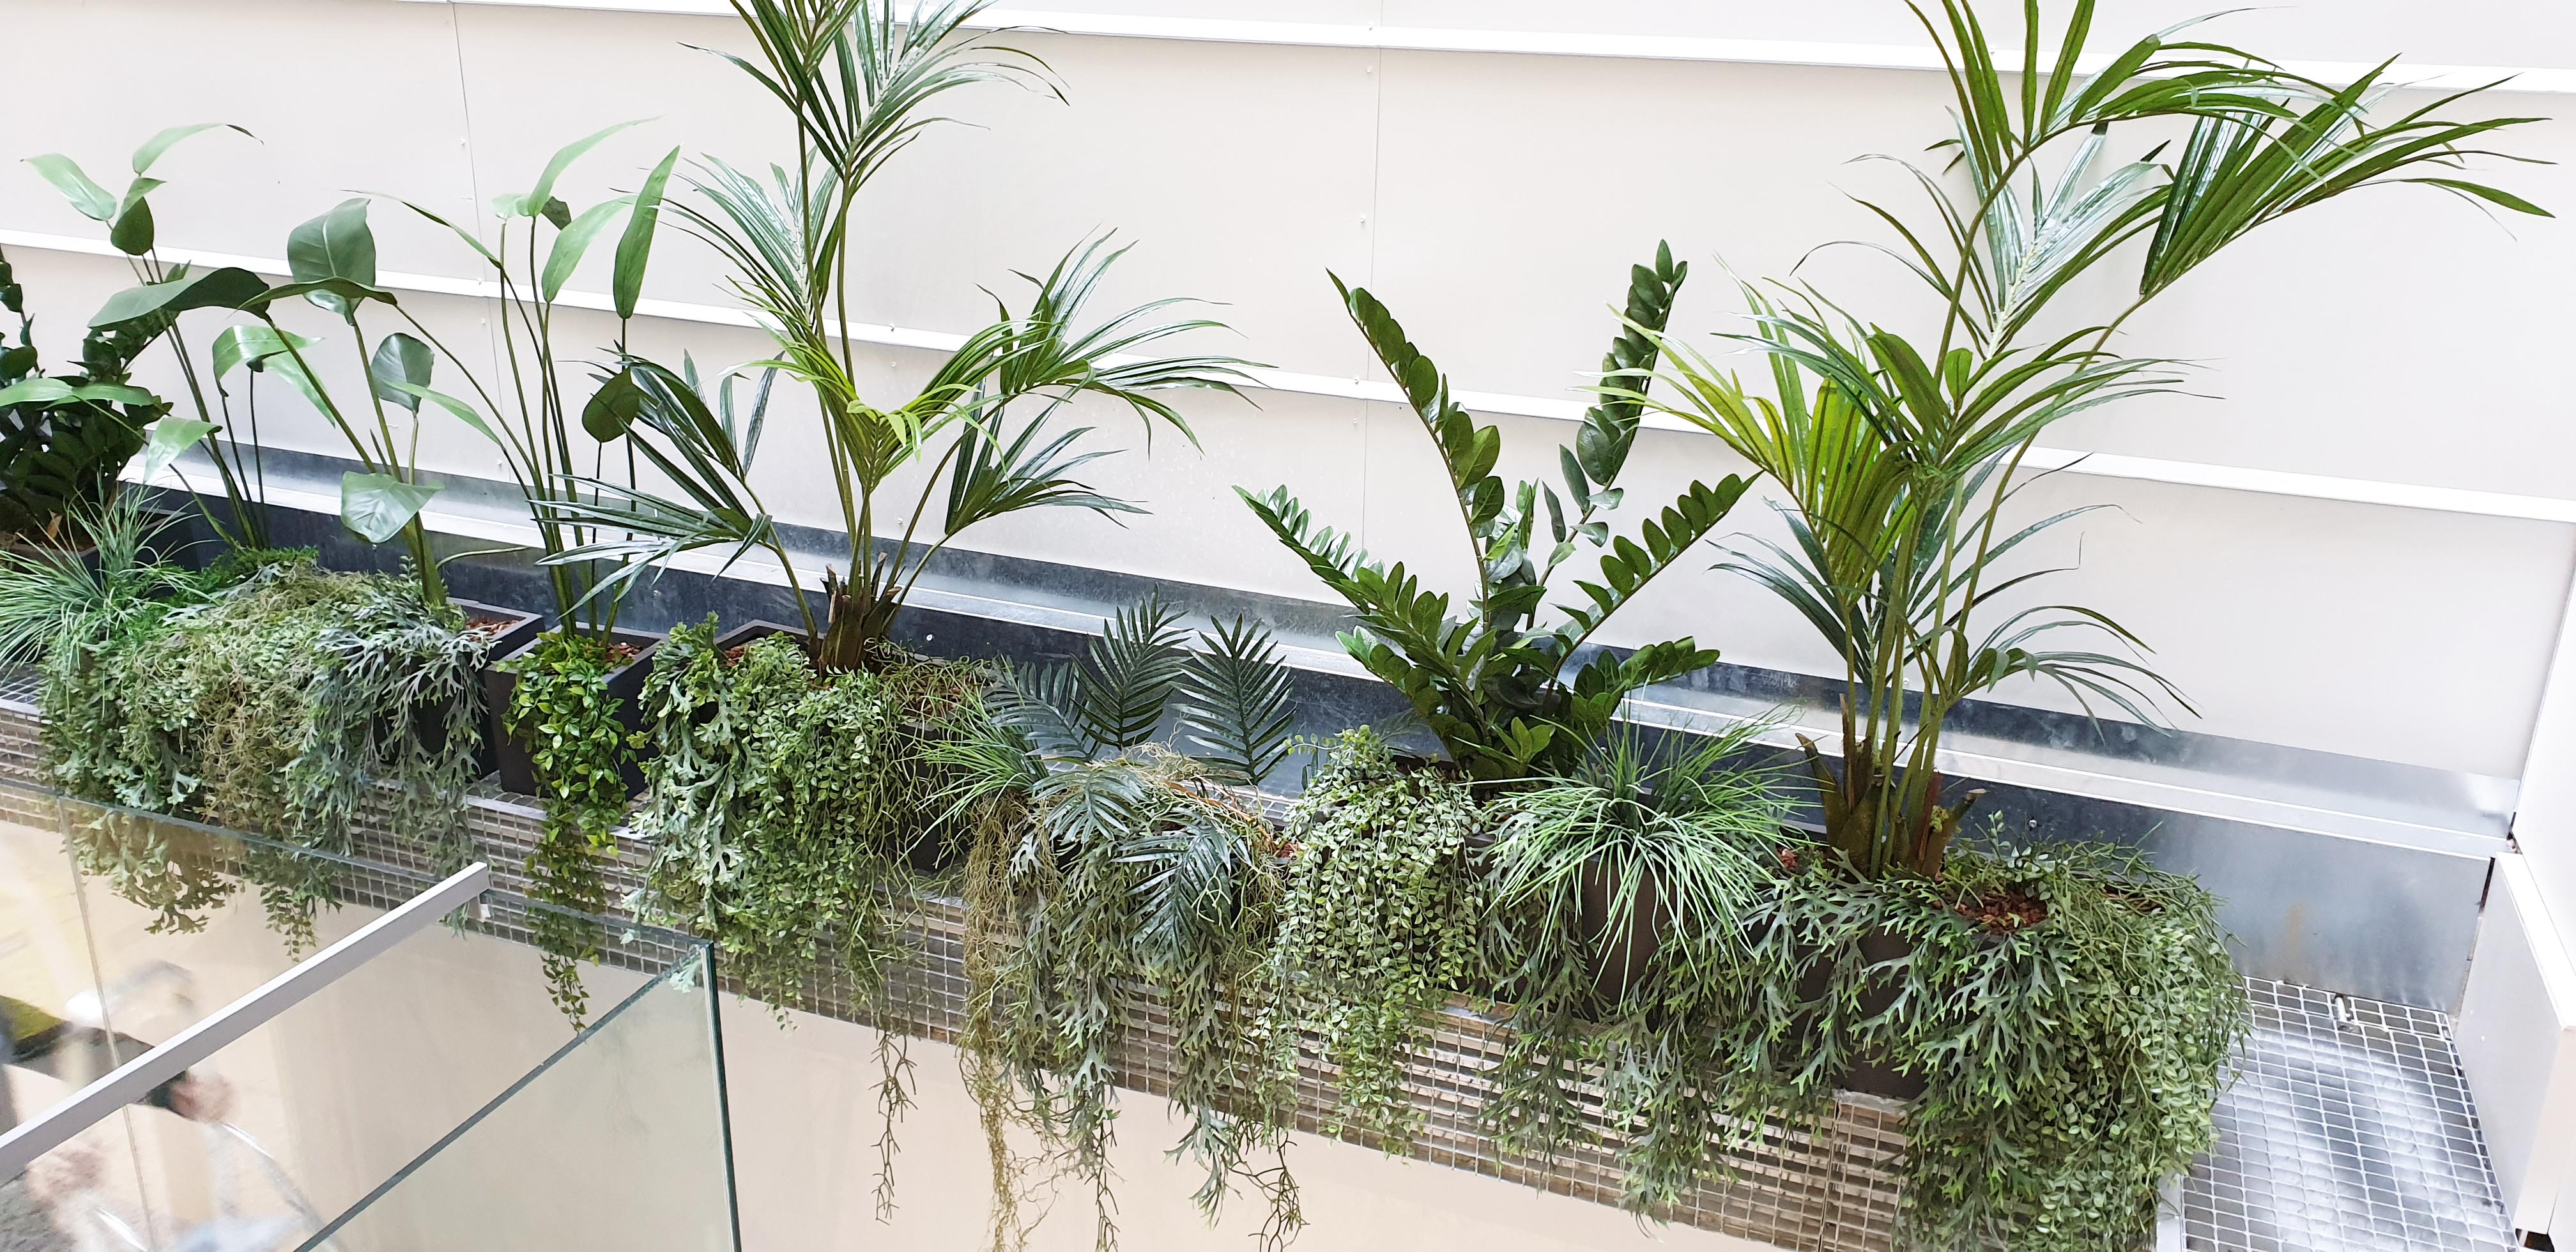 Plantas artificiales decorativas para decorar tu casa